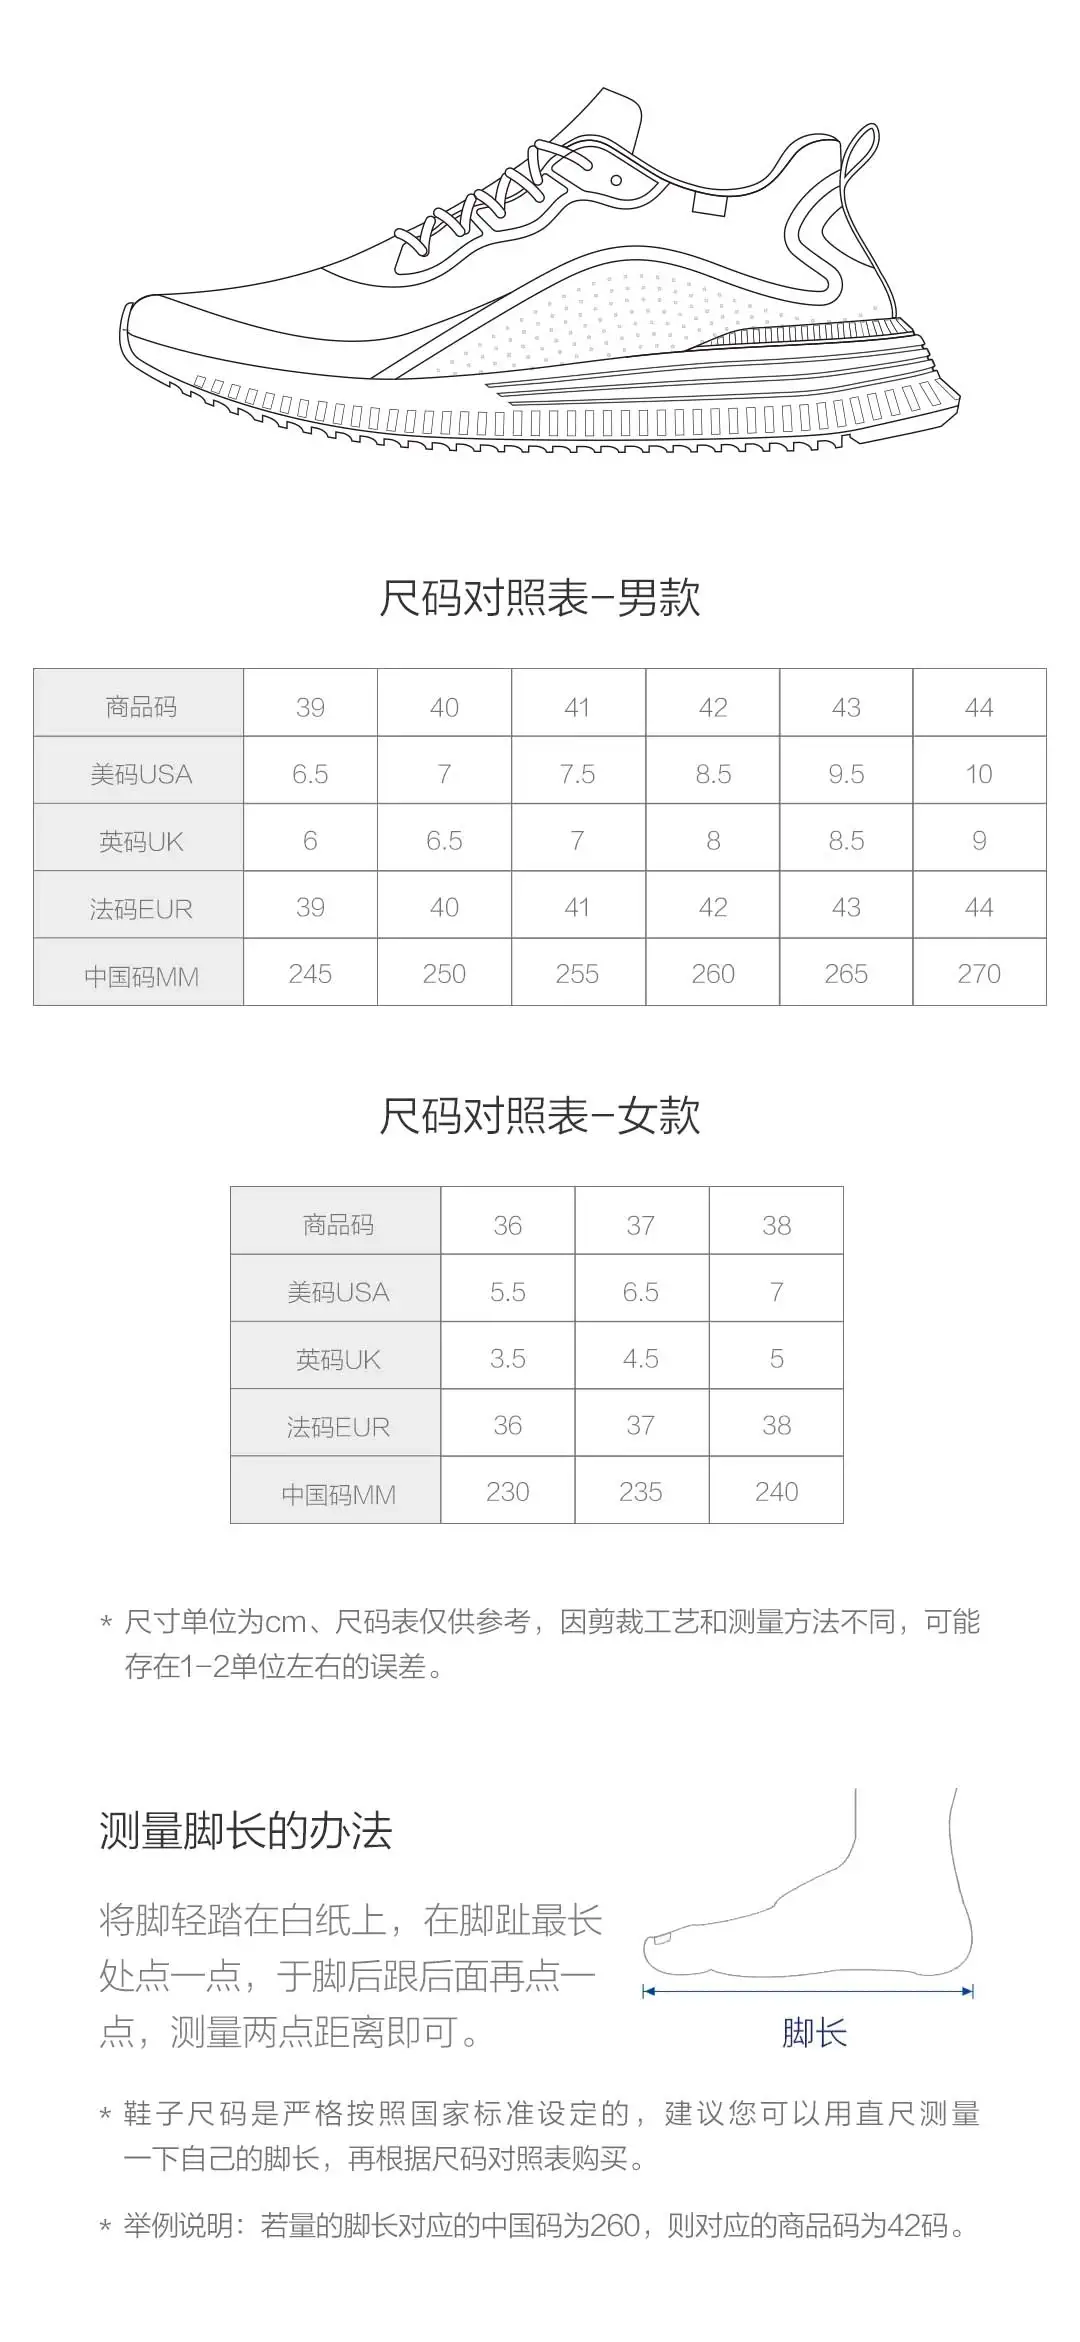 Xiaomi 90 точек носить облако отскок амортизирующие обувь дышащая сетчатая поверхность попкорн амортизирующая промежуточная подошва